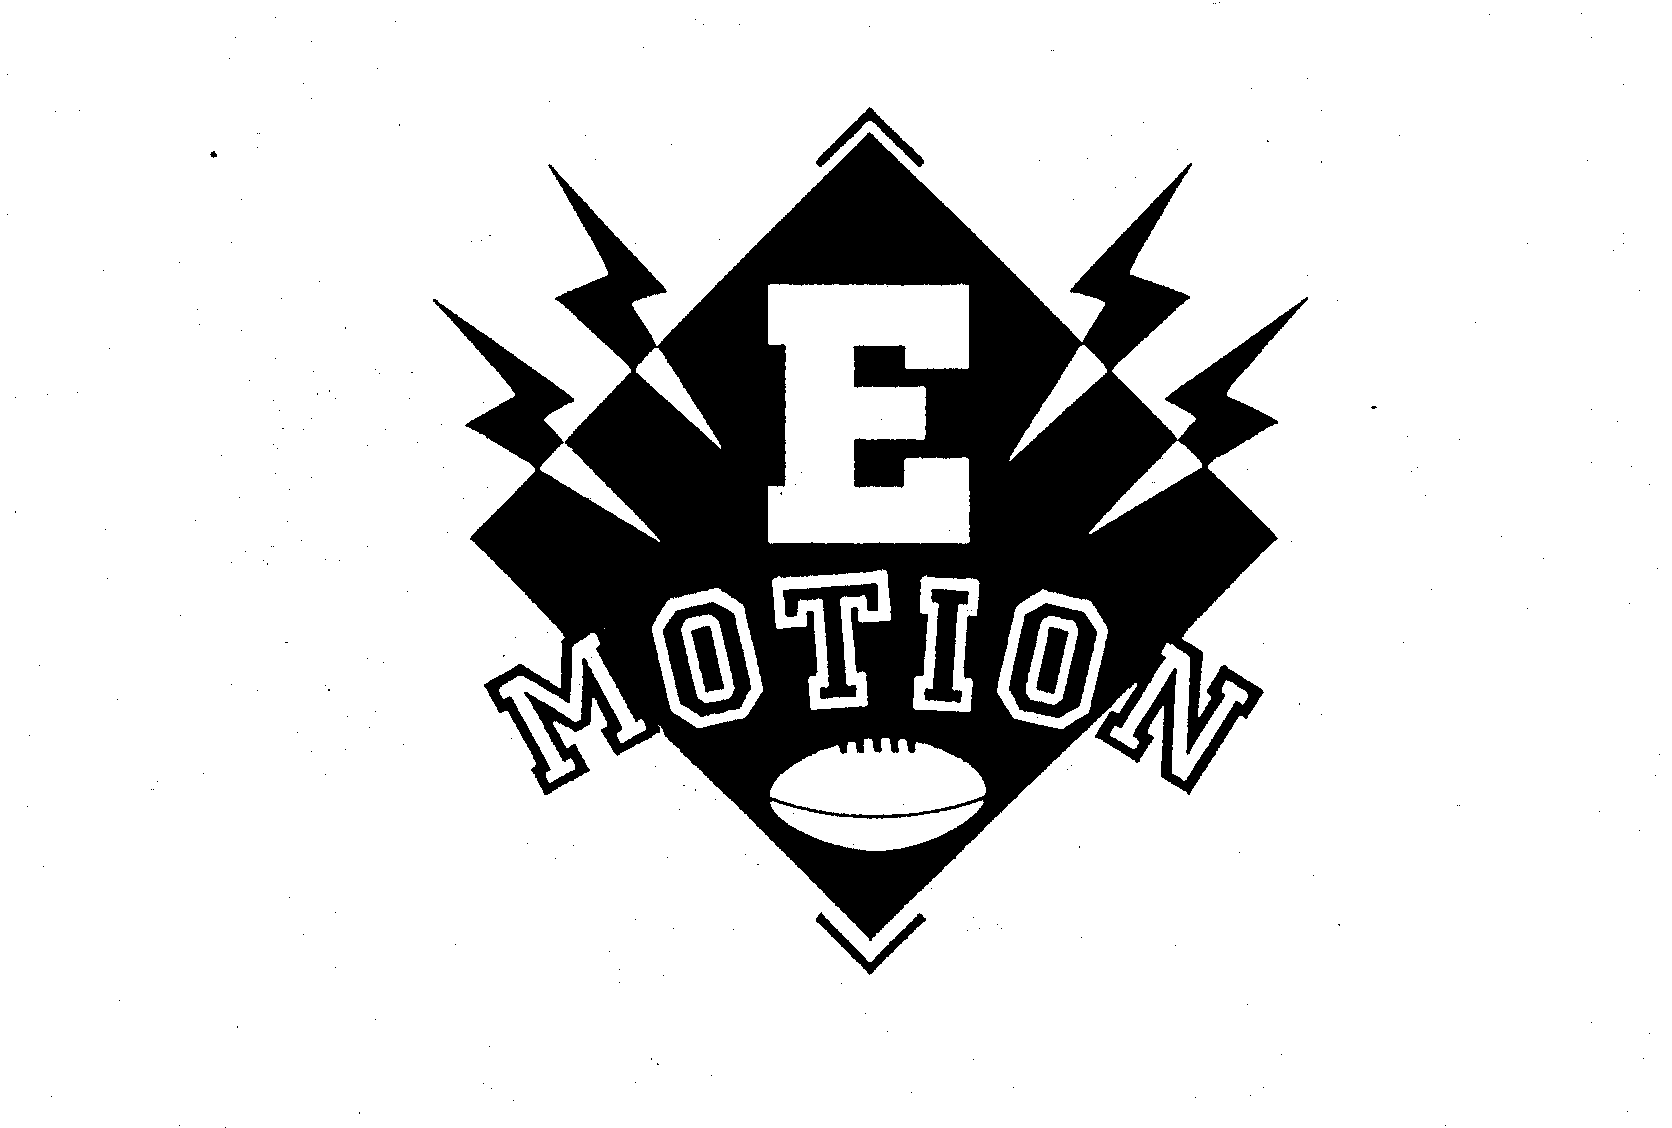  E MOTION